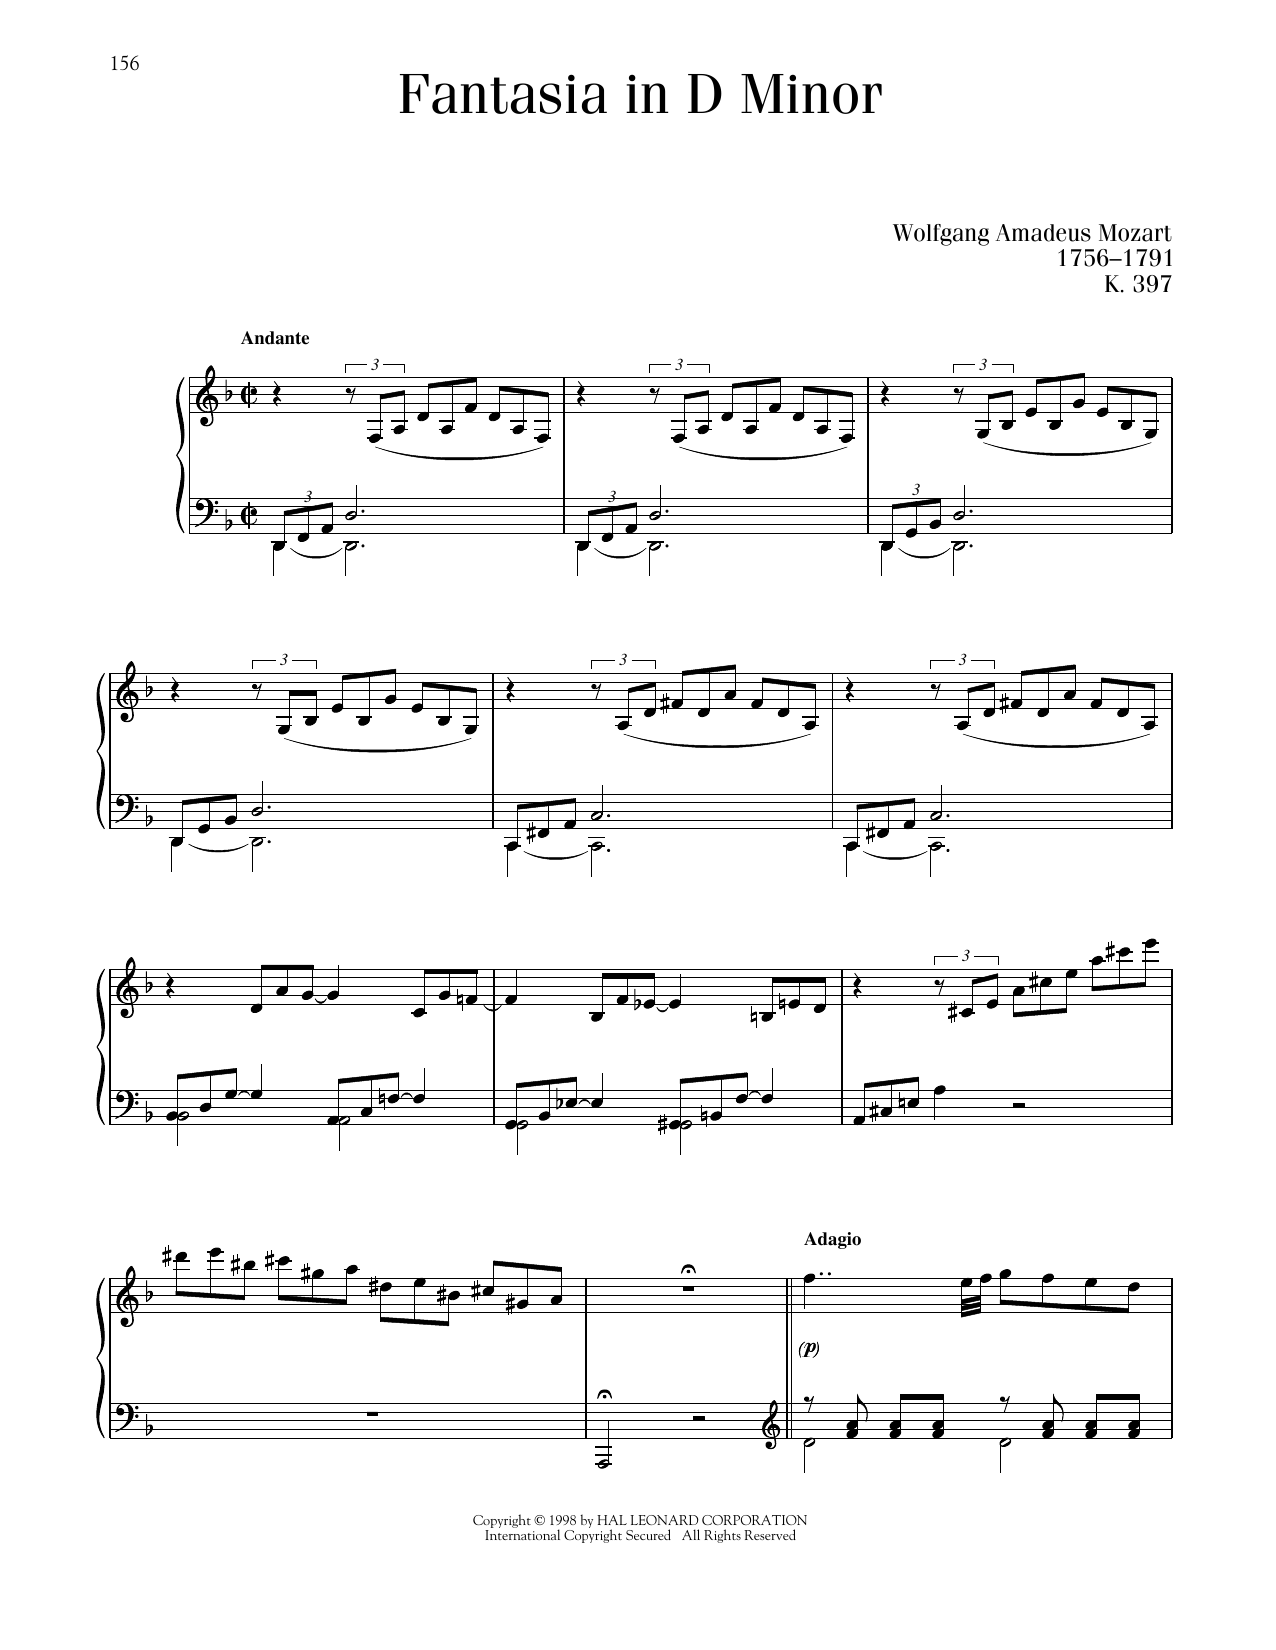 Wolfgang Amadeus Mozart Fantasia In D Minor, K. 397 sheet music notes printable PDF score